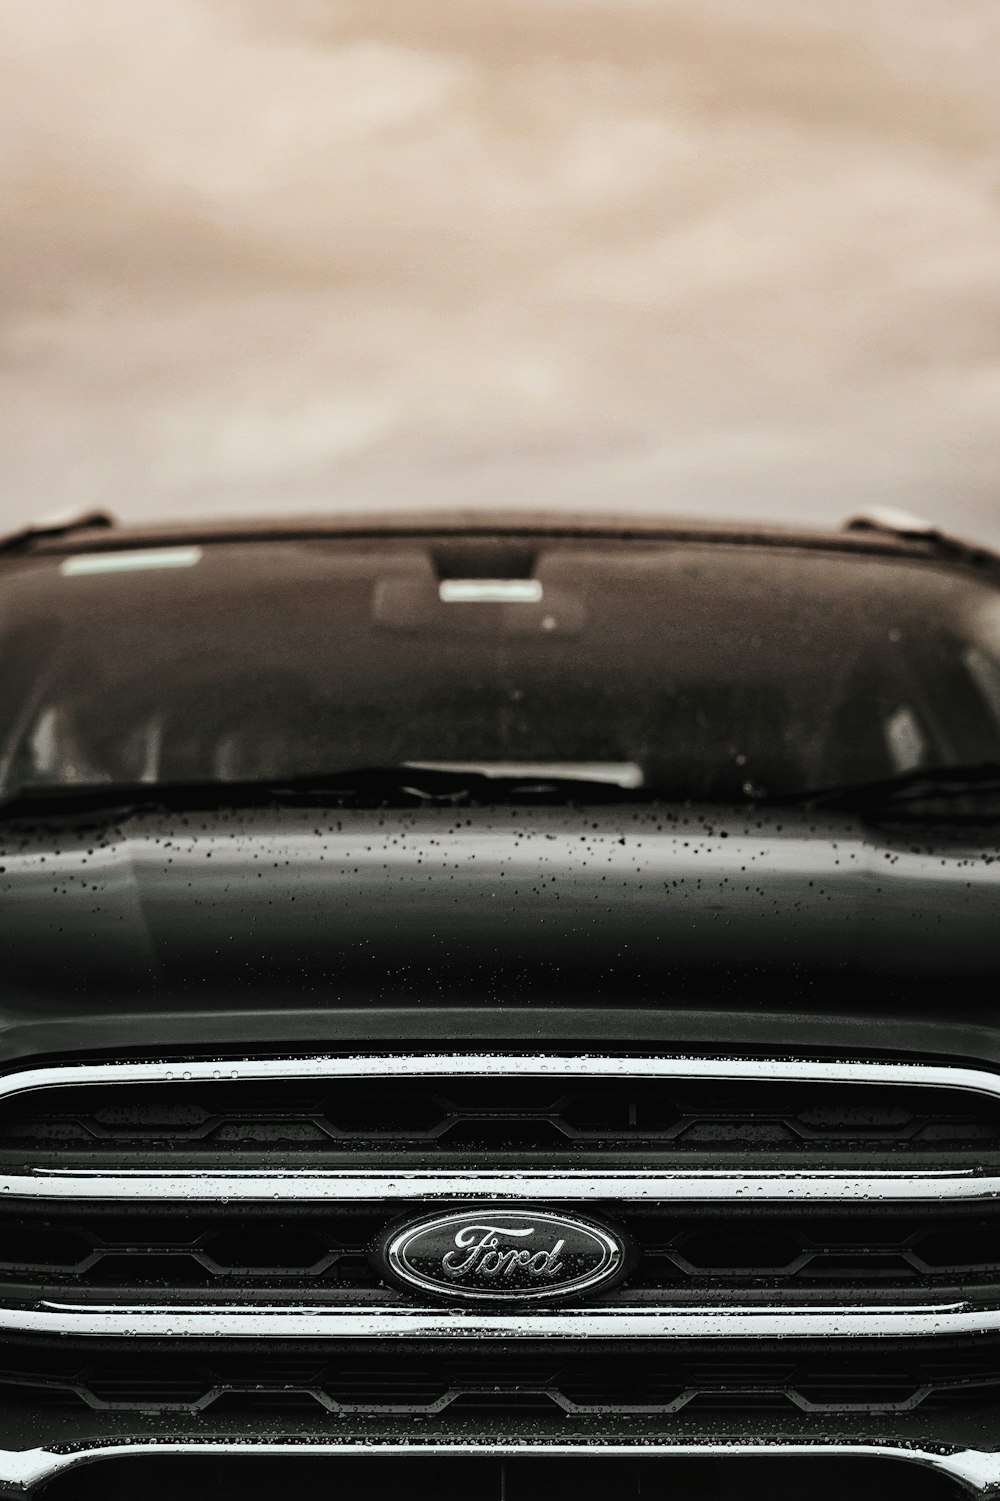 véhicule Ford noir sous un ciel nuageux